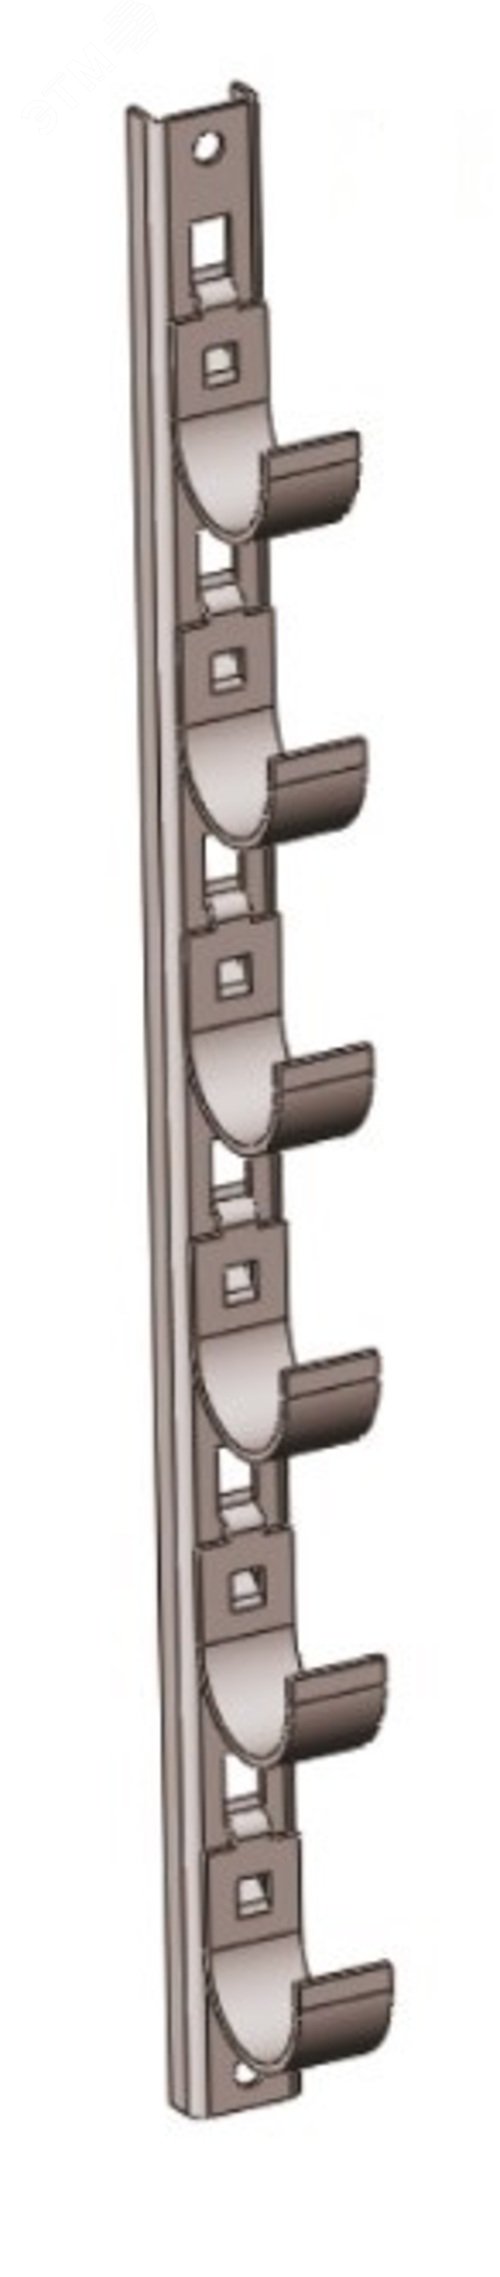 Кронштейн рожковый прямолинейный Р1В8 с 8 рожками, без покрытия, S3,0,  L1065 П0000000560 Завод ЭМИ Курган